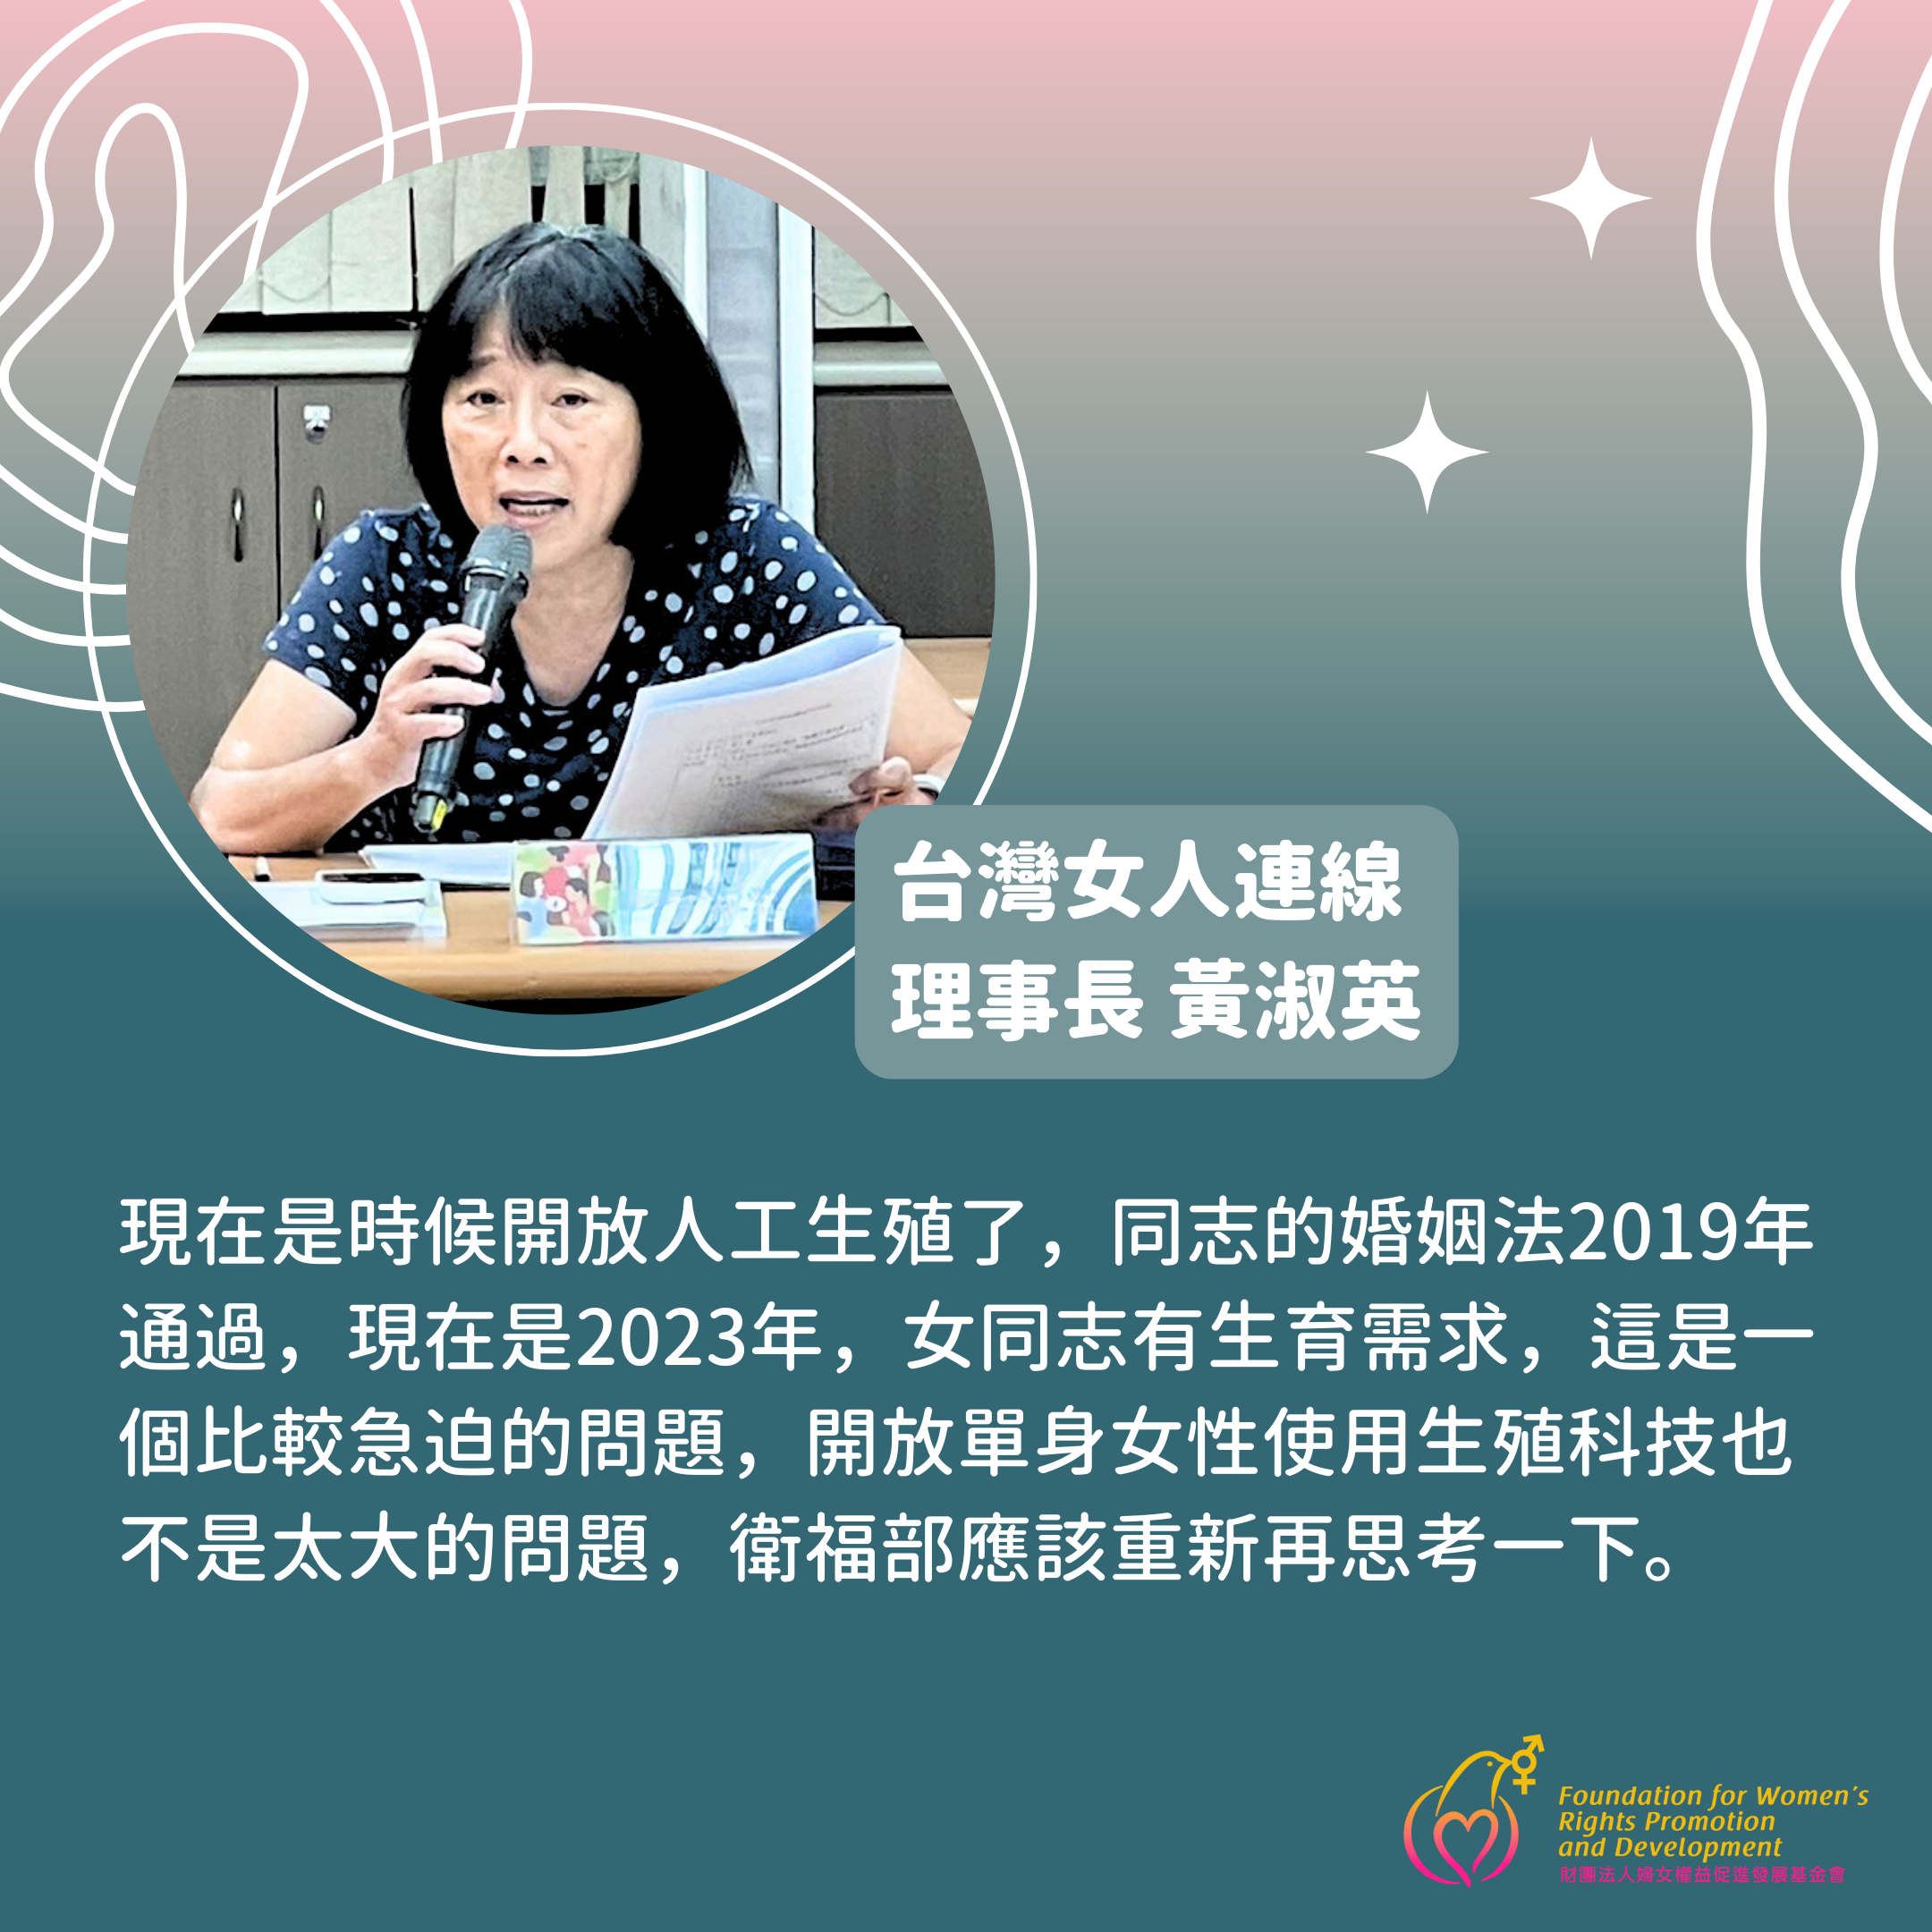 【會議】理事長黃淑英出席婦權基金會「2023 婦女暨性別議題對話平台系列會議」